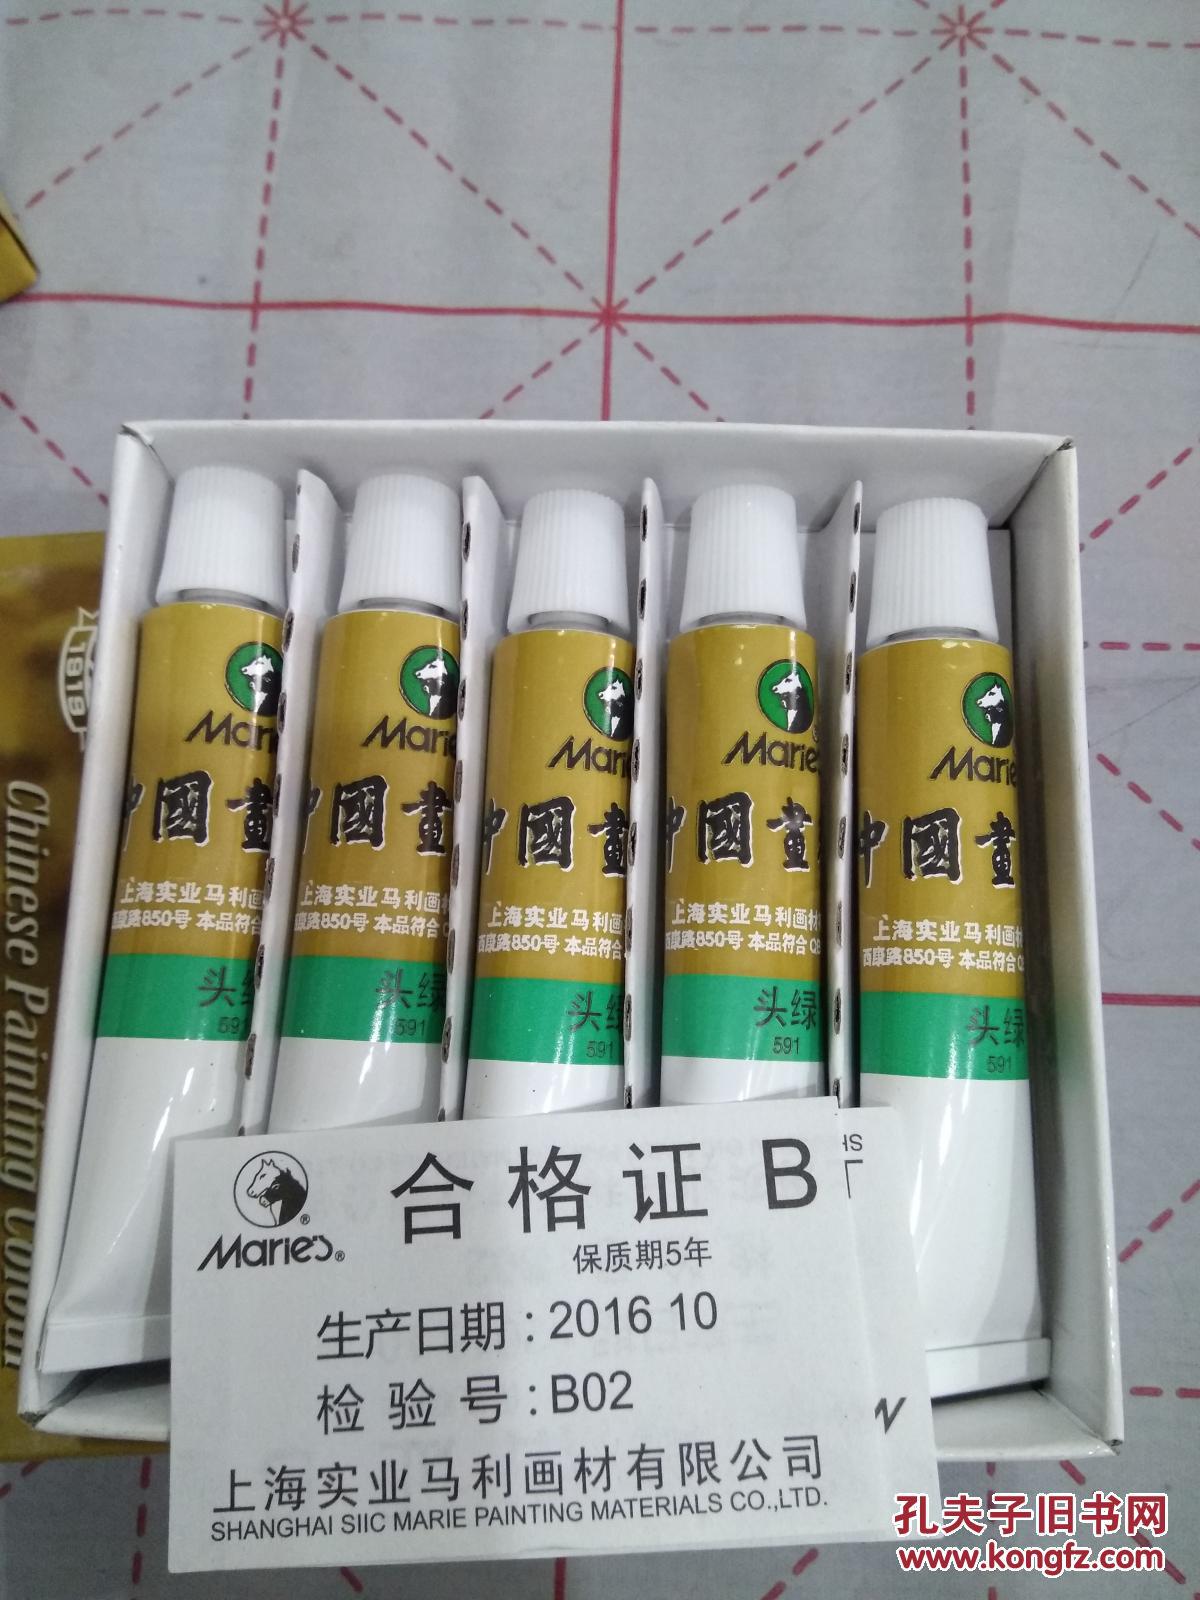 正品中国画颜料,马利牌,头绿(一盒5支)上海实业